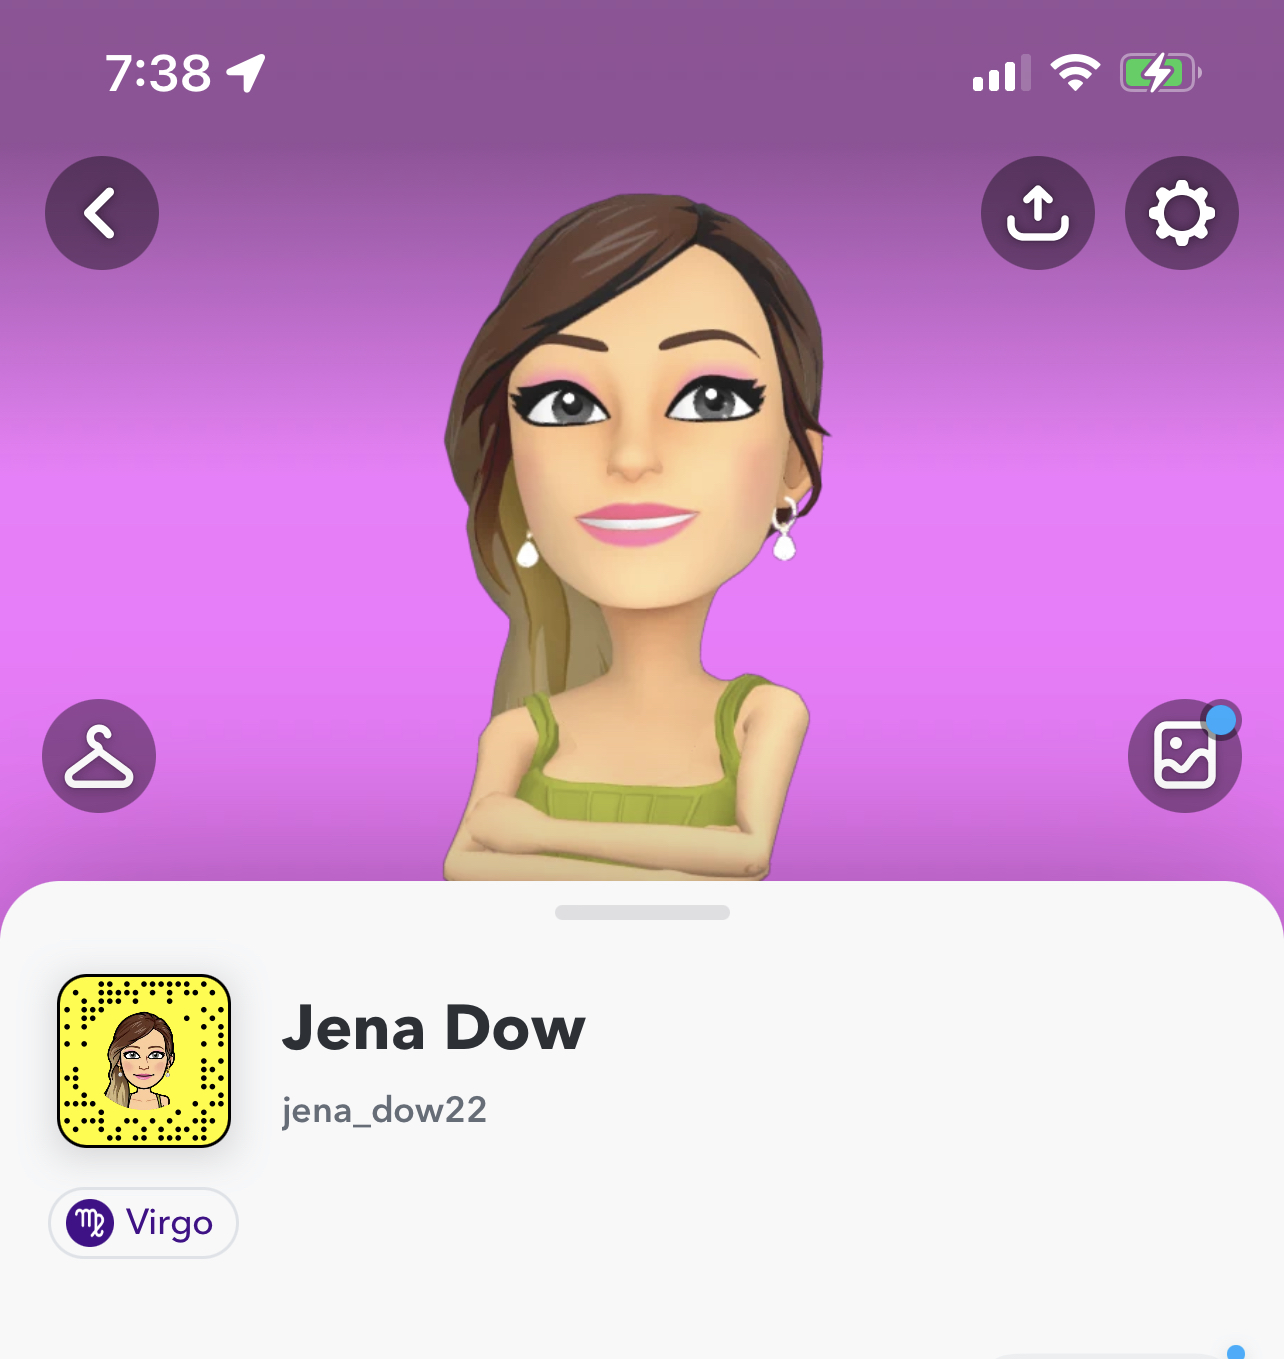 Jena Dow